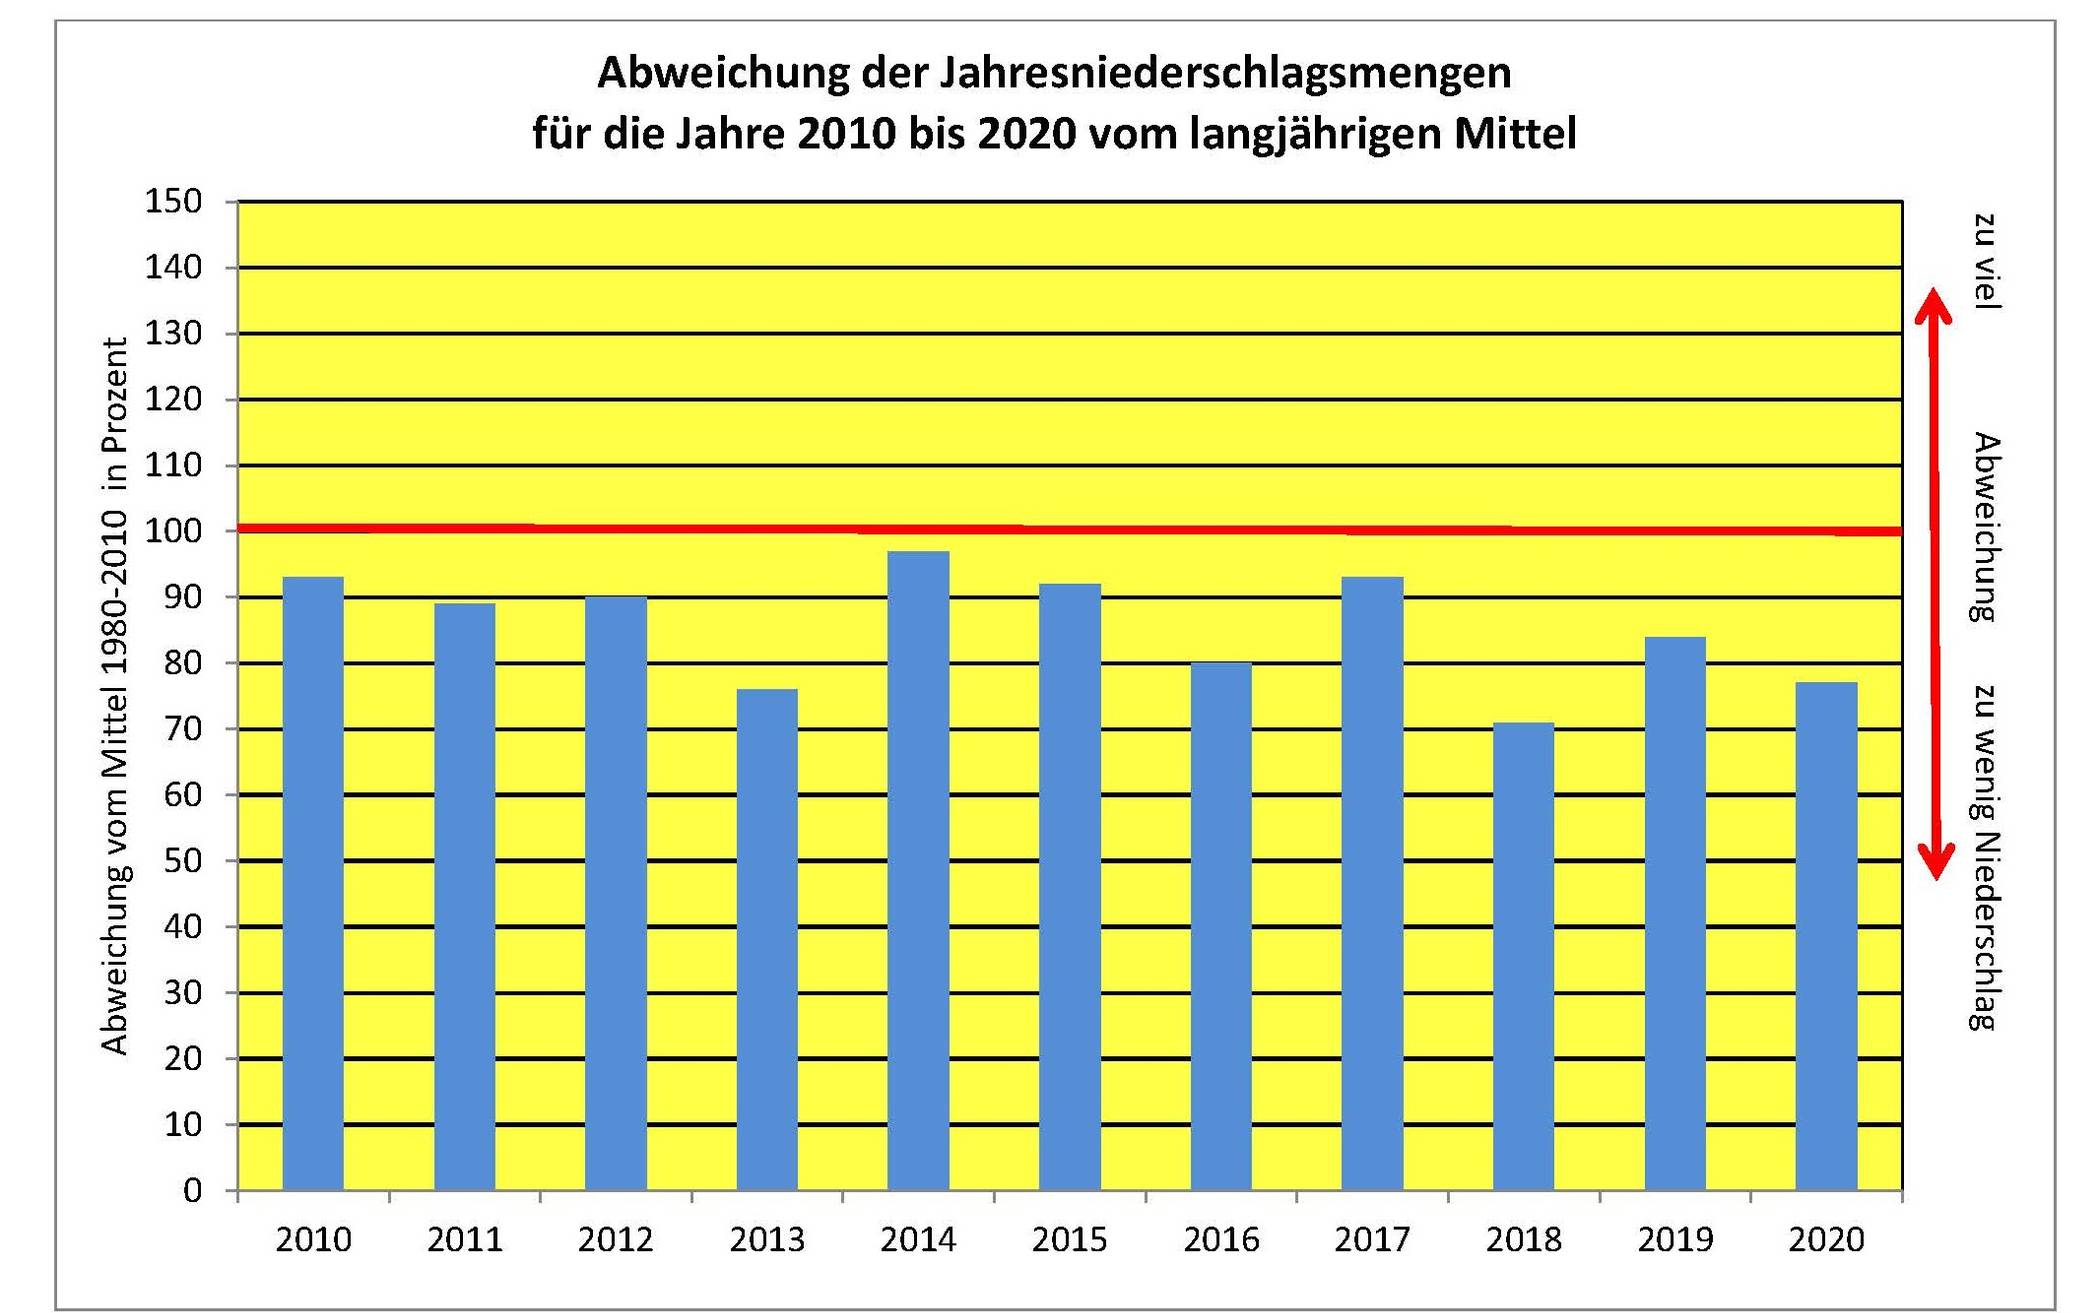  Entwicklung der jährlichen Niederschlagsmengen in Düsseldorf: Von 2010 bis 2020 wurde der Wert des langjährigen Mittels aus dem Zeitraum 1981 bis 2010 (rote Linie) in keinem einzigen Jahr erreicht. 